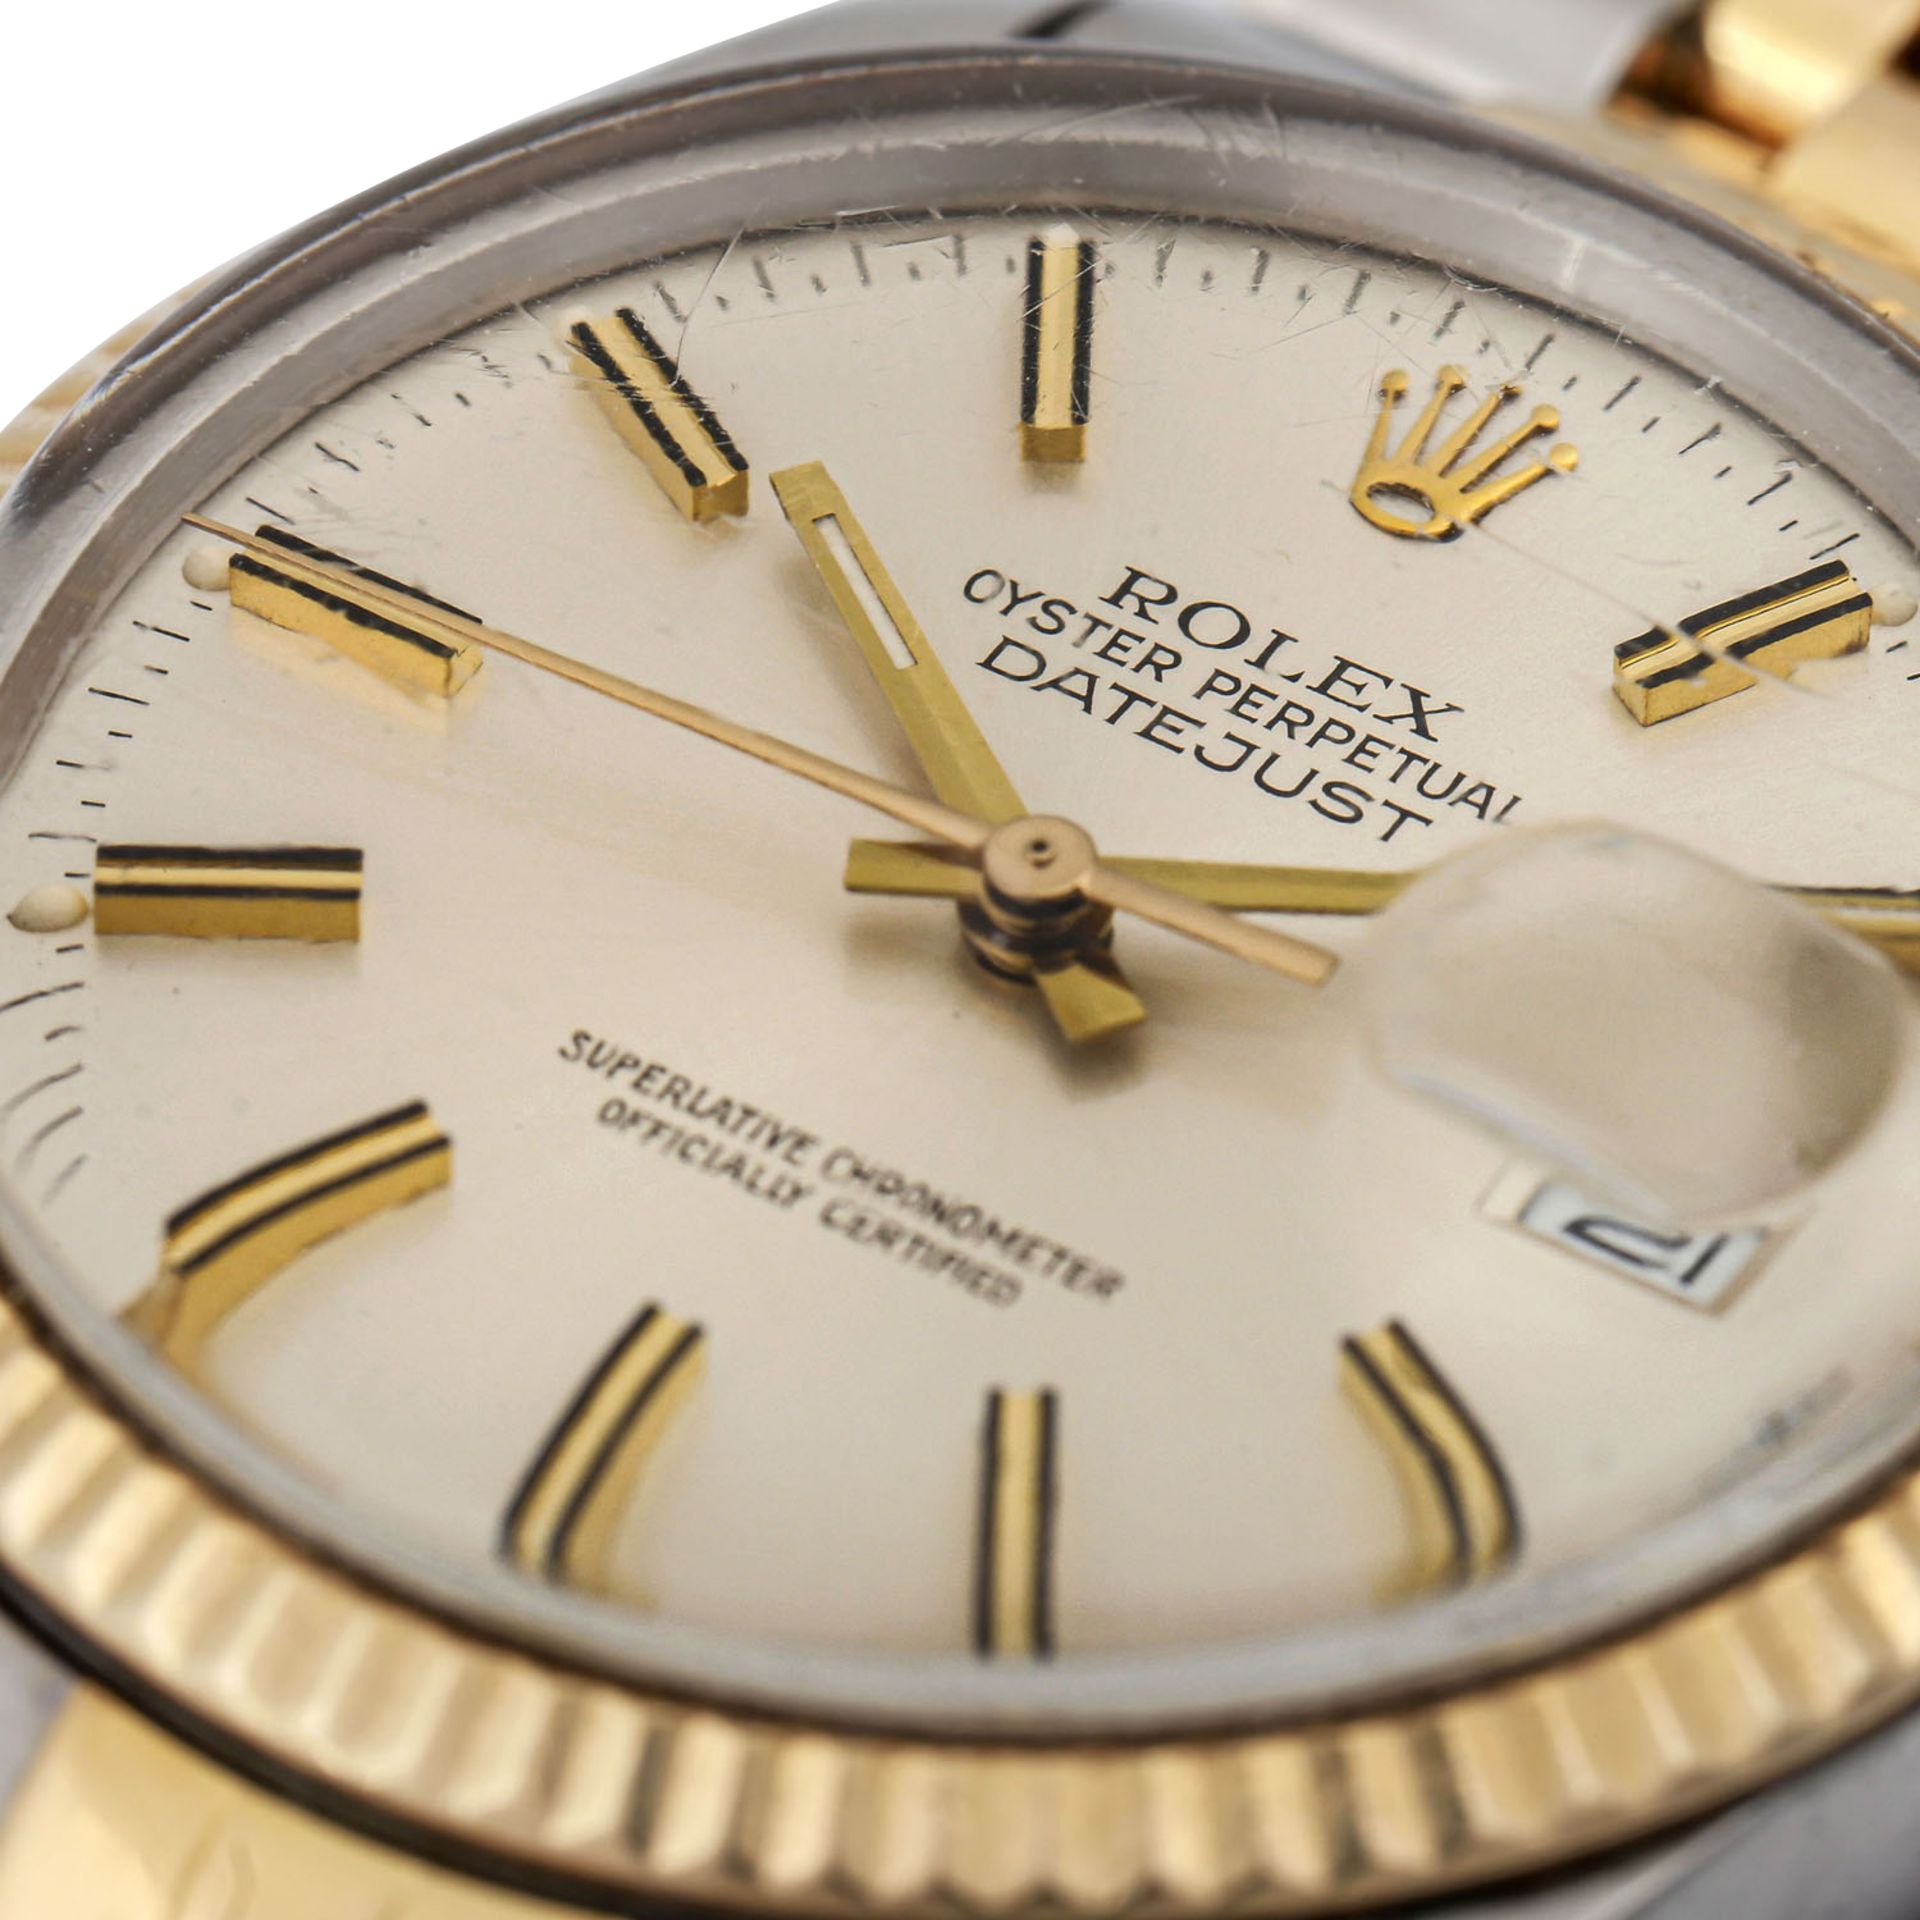 ROLEX Datejust 36, Ref. 16013. Armbanduhr.Edelstahl/Gold 18K. Automatic-Werk. Sehr deutliche - Bild 4 aus 4